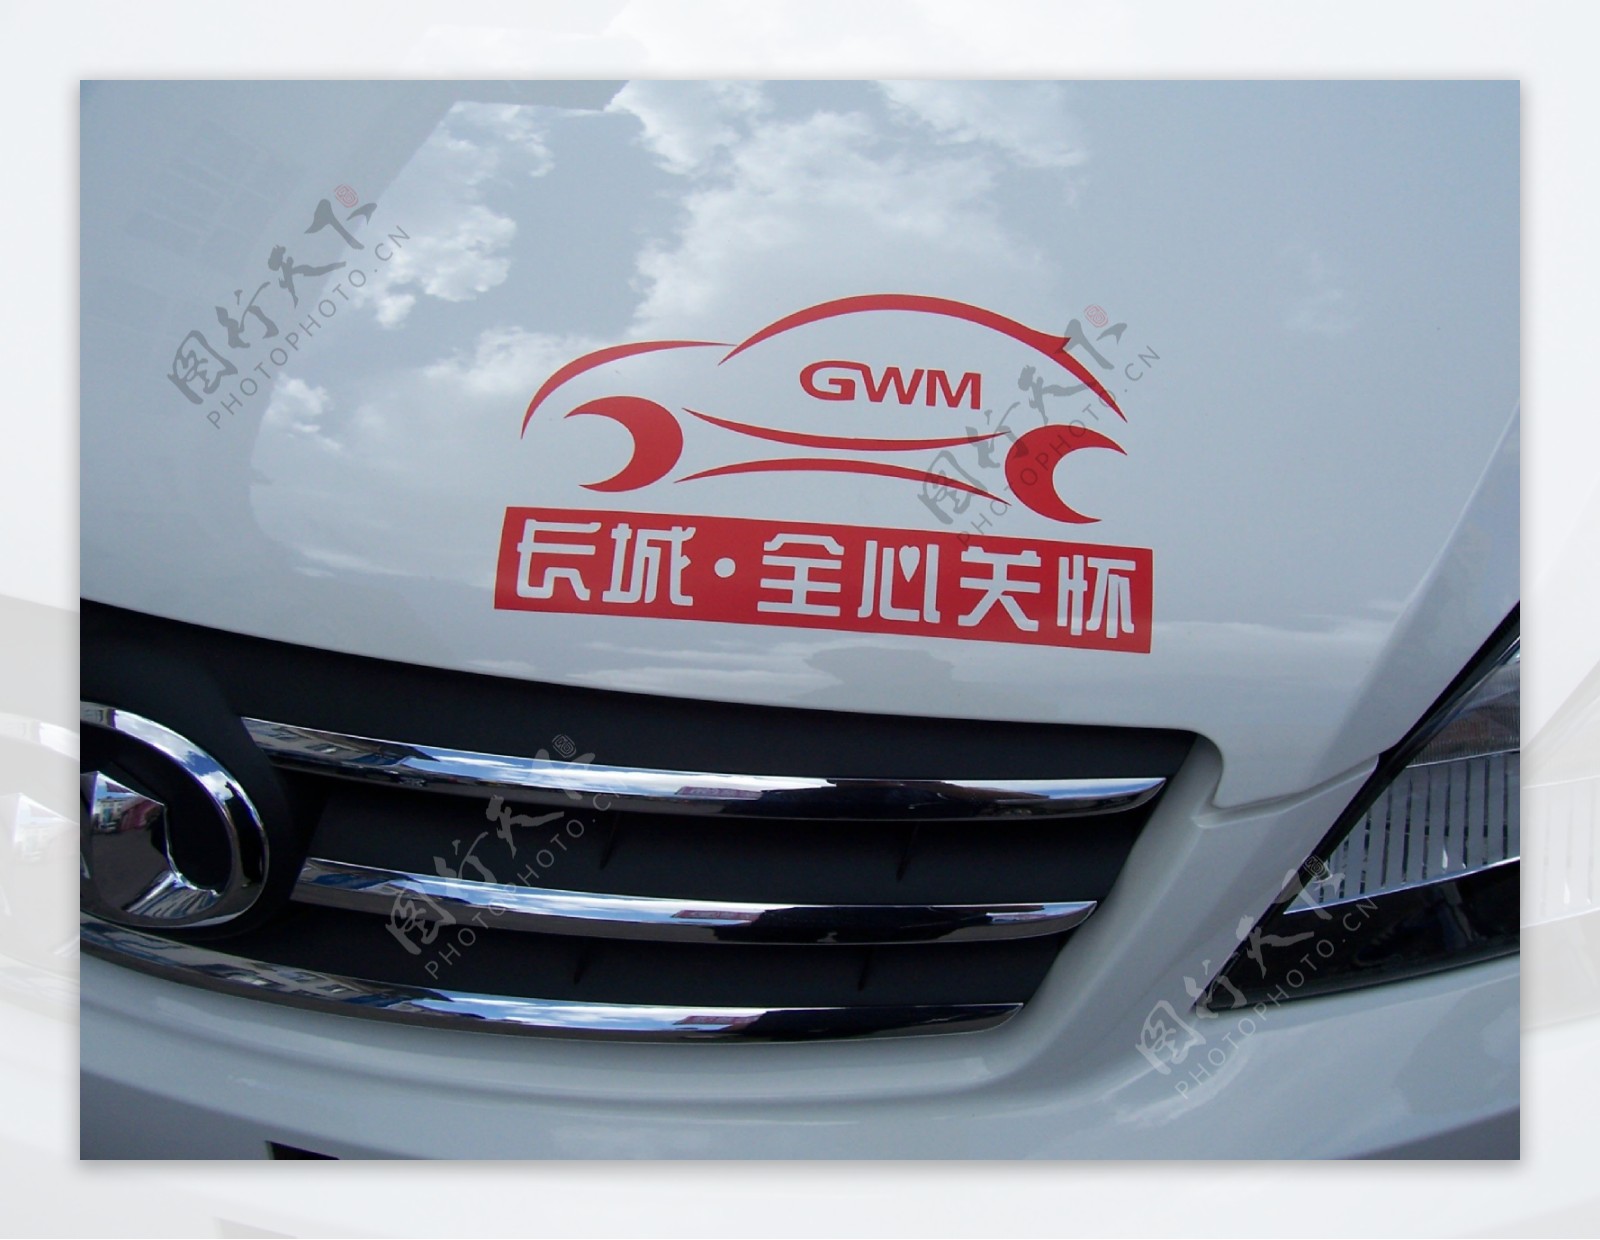 长城汽车宣传logo图片